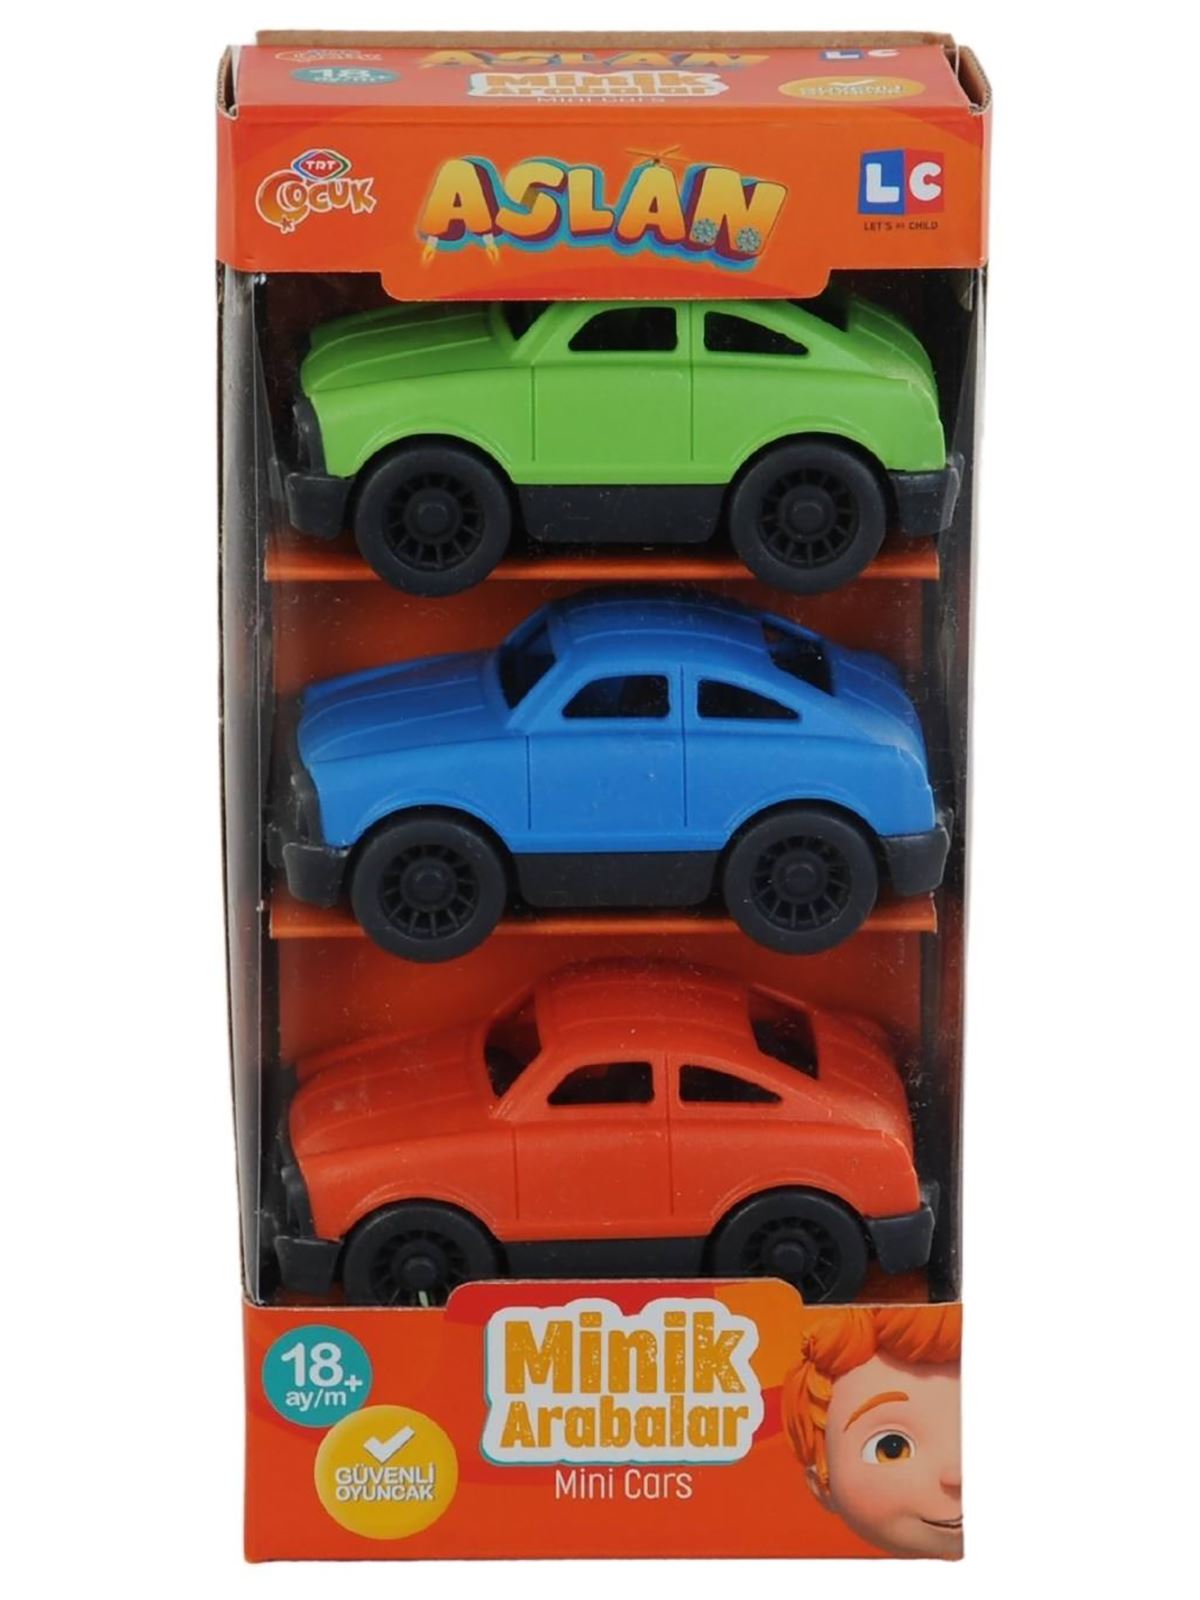 Let's Be Child TRT Çocuk Lisanslı Minik Arabalar - Aslan 